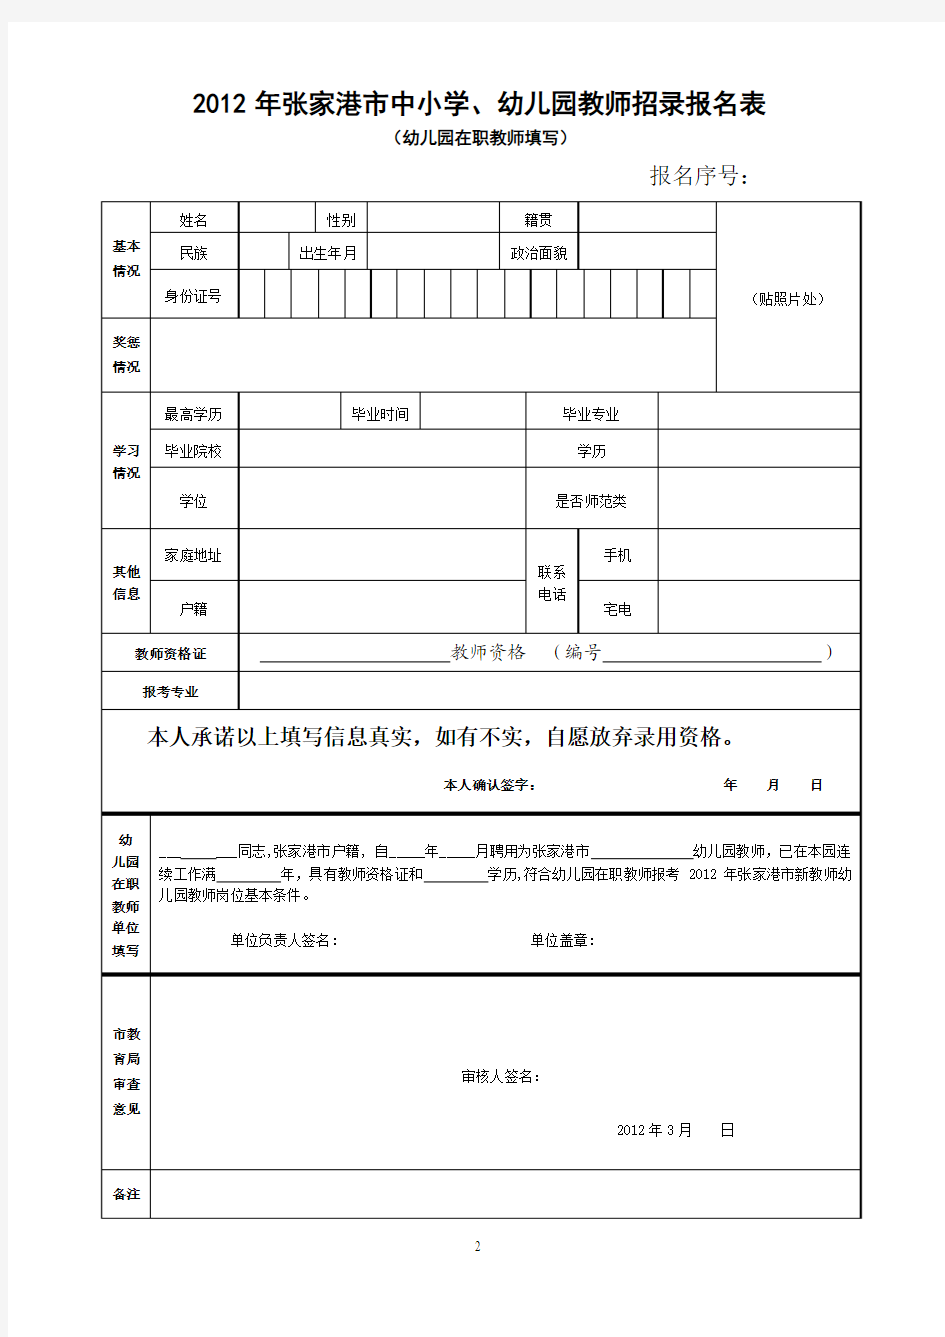 2012年张家港市中小学、幼儿园教师招录报名表